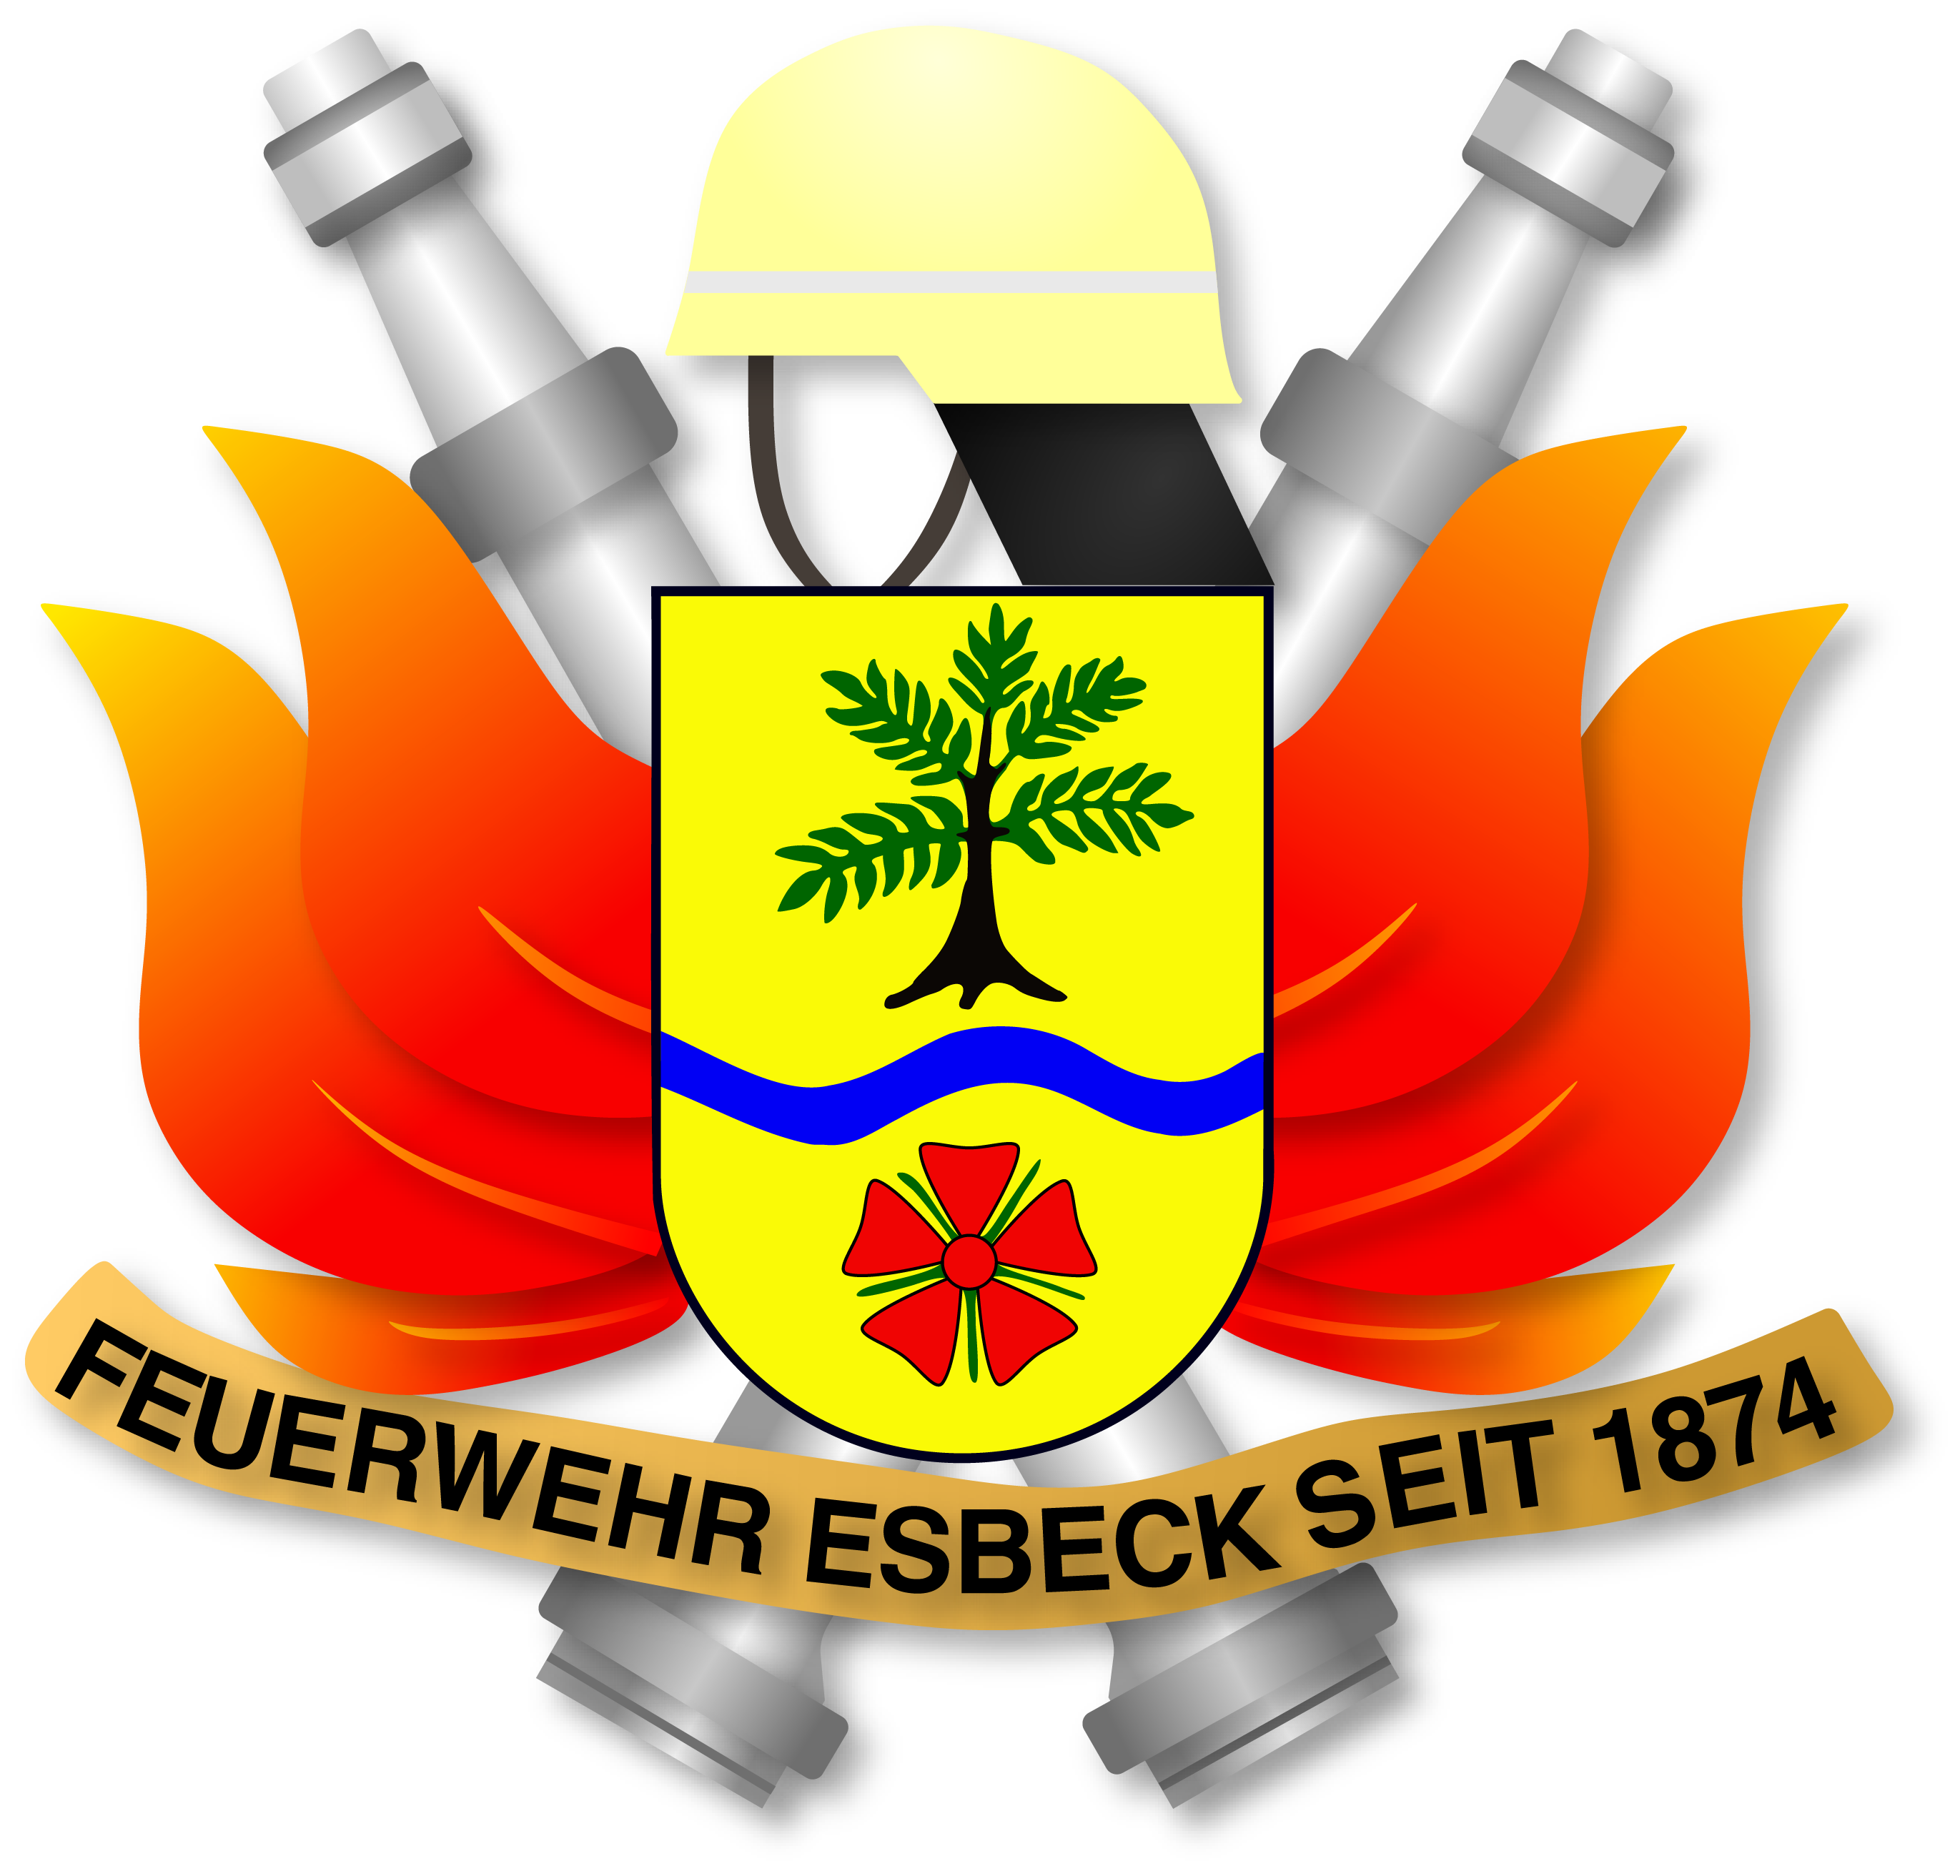 Das Logo der Freiwilligen Feuerwehr Esbeck zeigt mittig im Vordergrund das Ortswappen, umgeben von einem Helm, Strahlrohren und Flammen.  Es ist der Schriftzug Feuerwehresbeck seit 1874 zu lesen